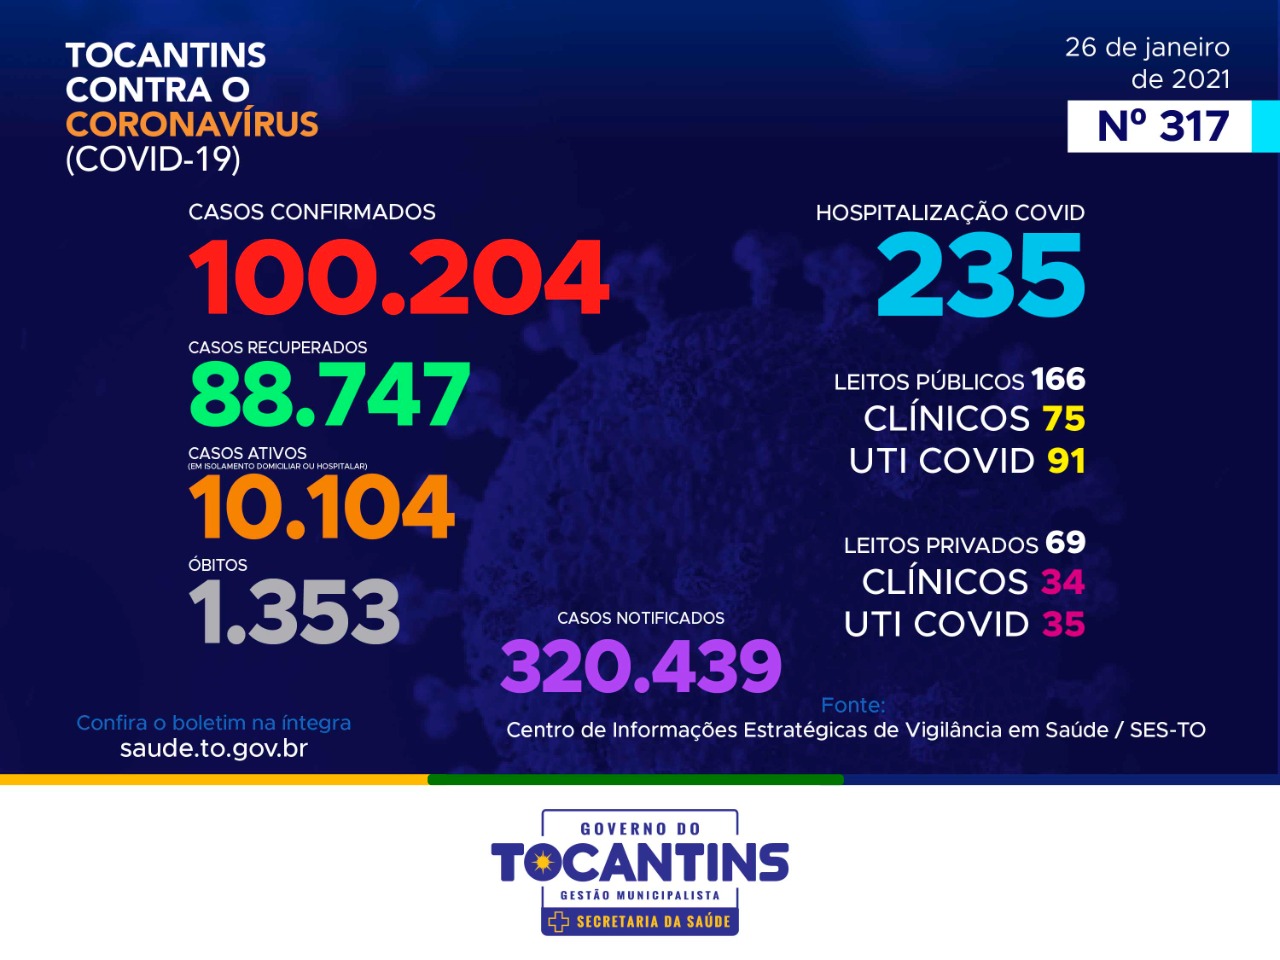 Tocantins registra 605 novos casos e atinge marca de 100 mil infectados pela Covid-19 nesta terça, 26